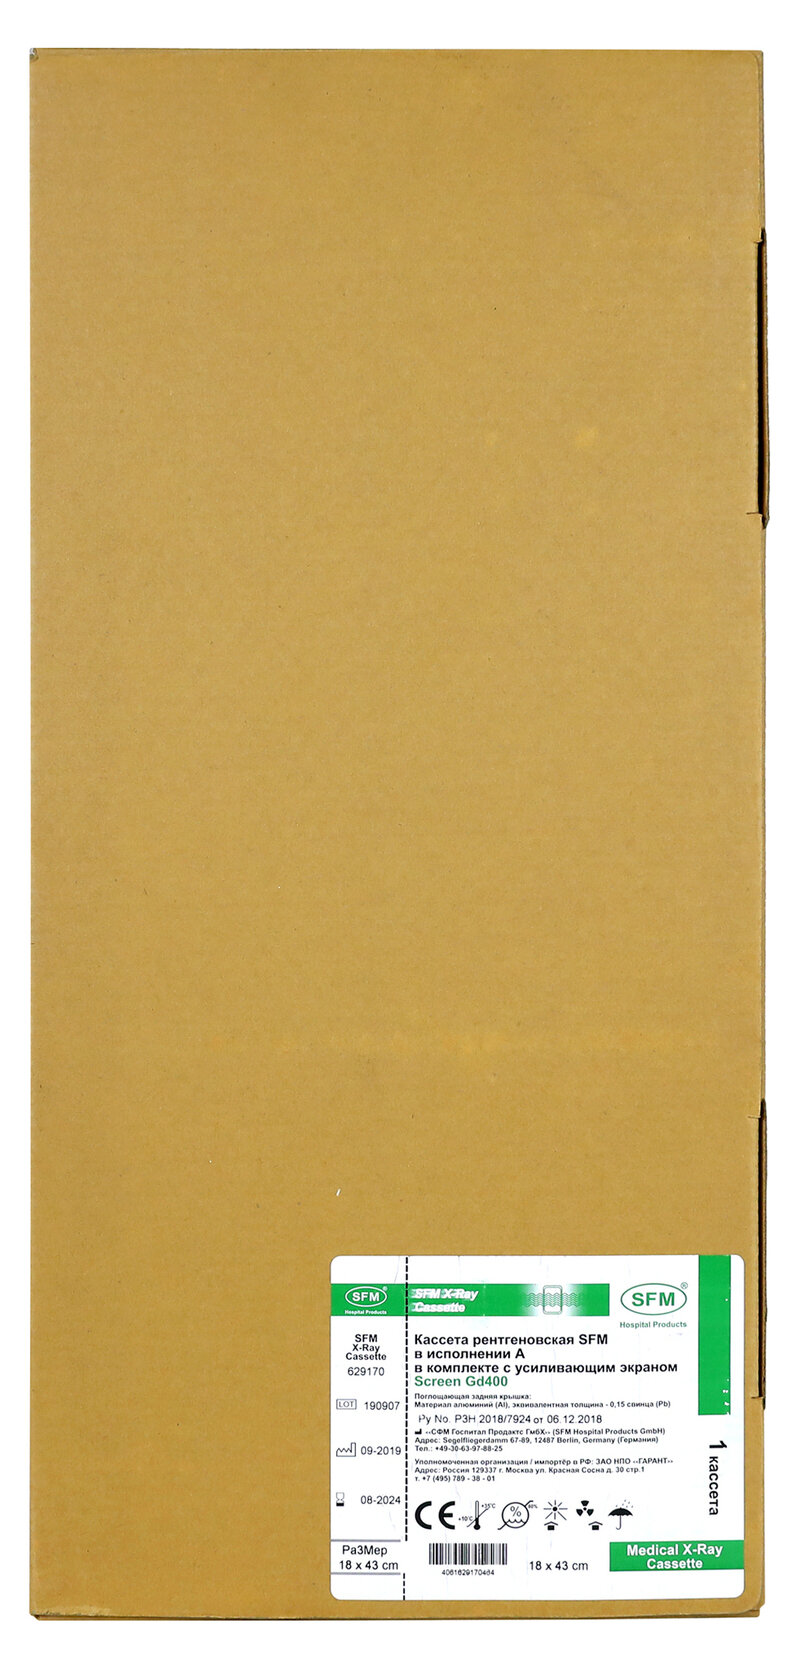 Кассета рентгеновская SFM в исполнении А в комплекте с усиливающими экранами Screen Gd400 (размер: 18 x 43 cм)